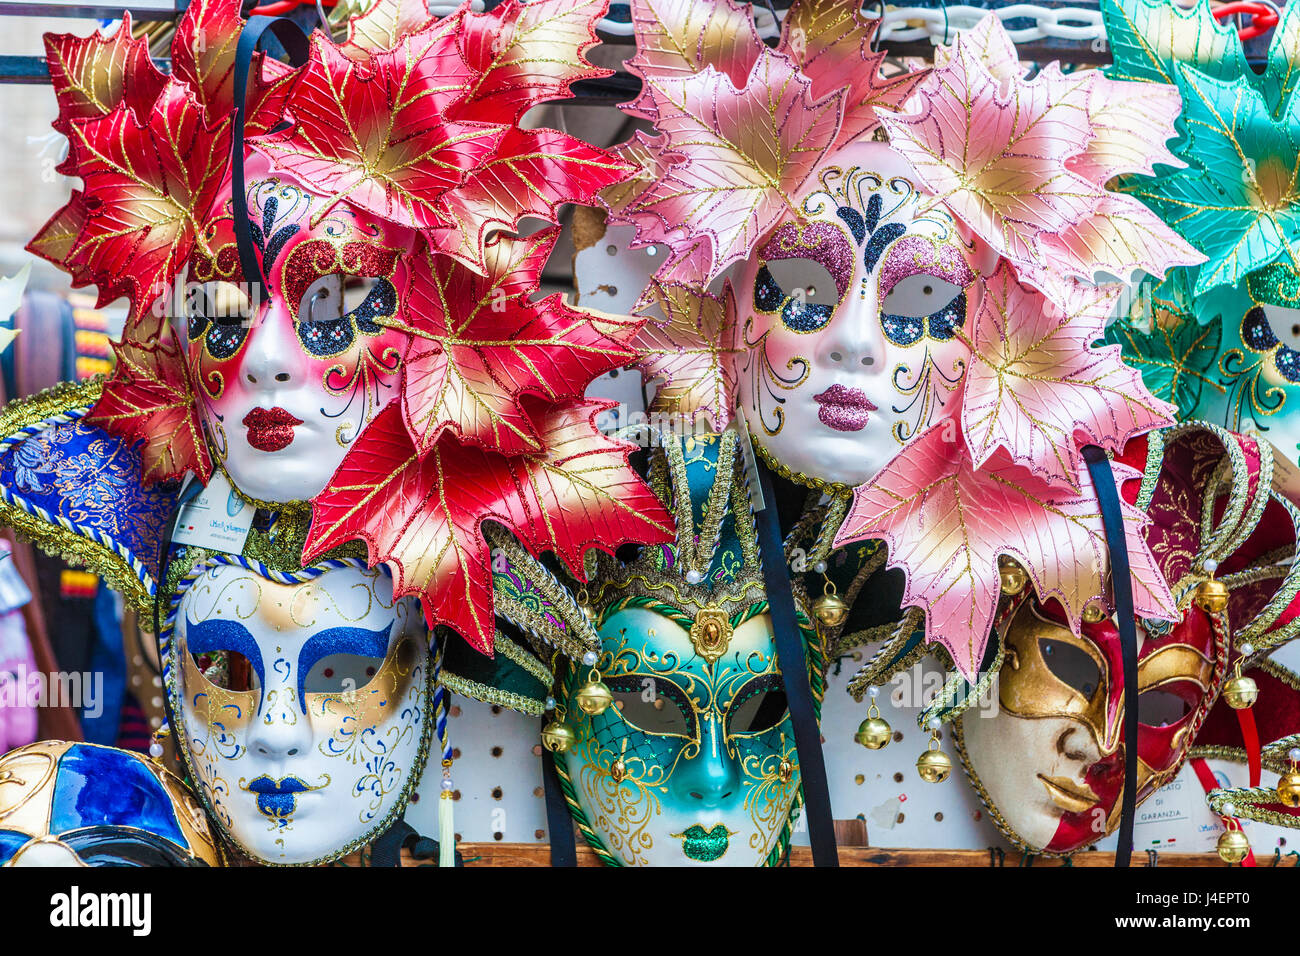 900+ idee su MASCHERE VENEZIANE  maschere veneziane, maschere, carnevale  di venezia